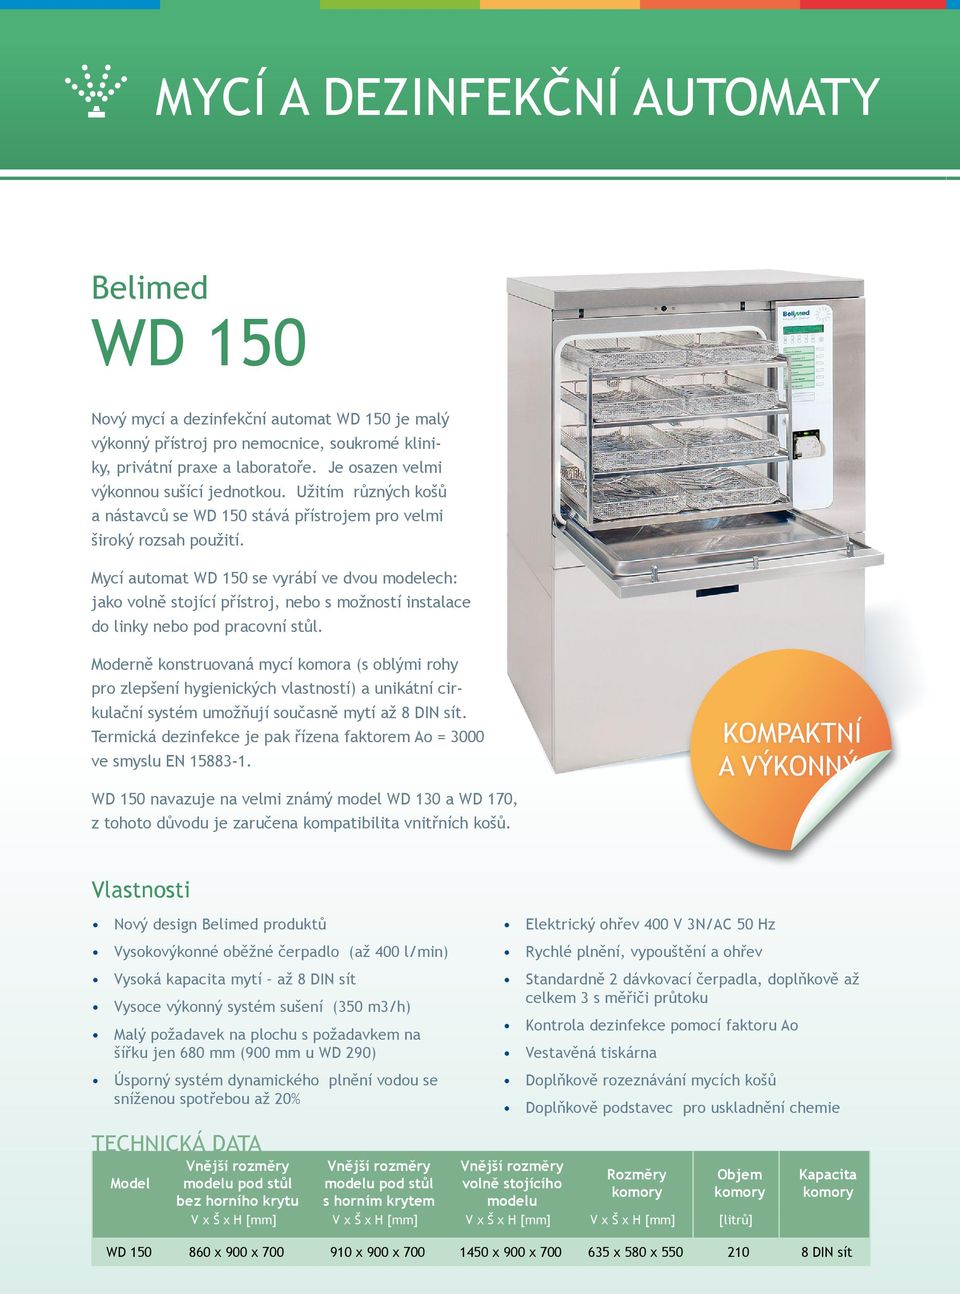 Mycí automat WD 150 se vyrábí ve dvou modelech: jako volně stojící přístroj, nebo s možností instalace do linky nebo pod pracovní stůl.